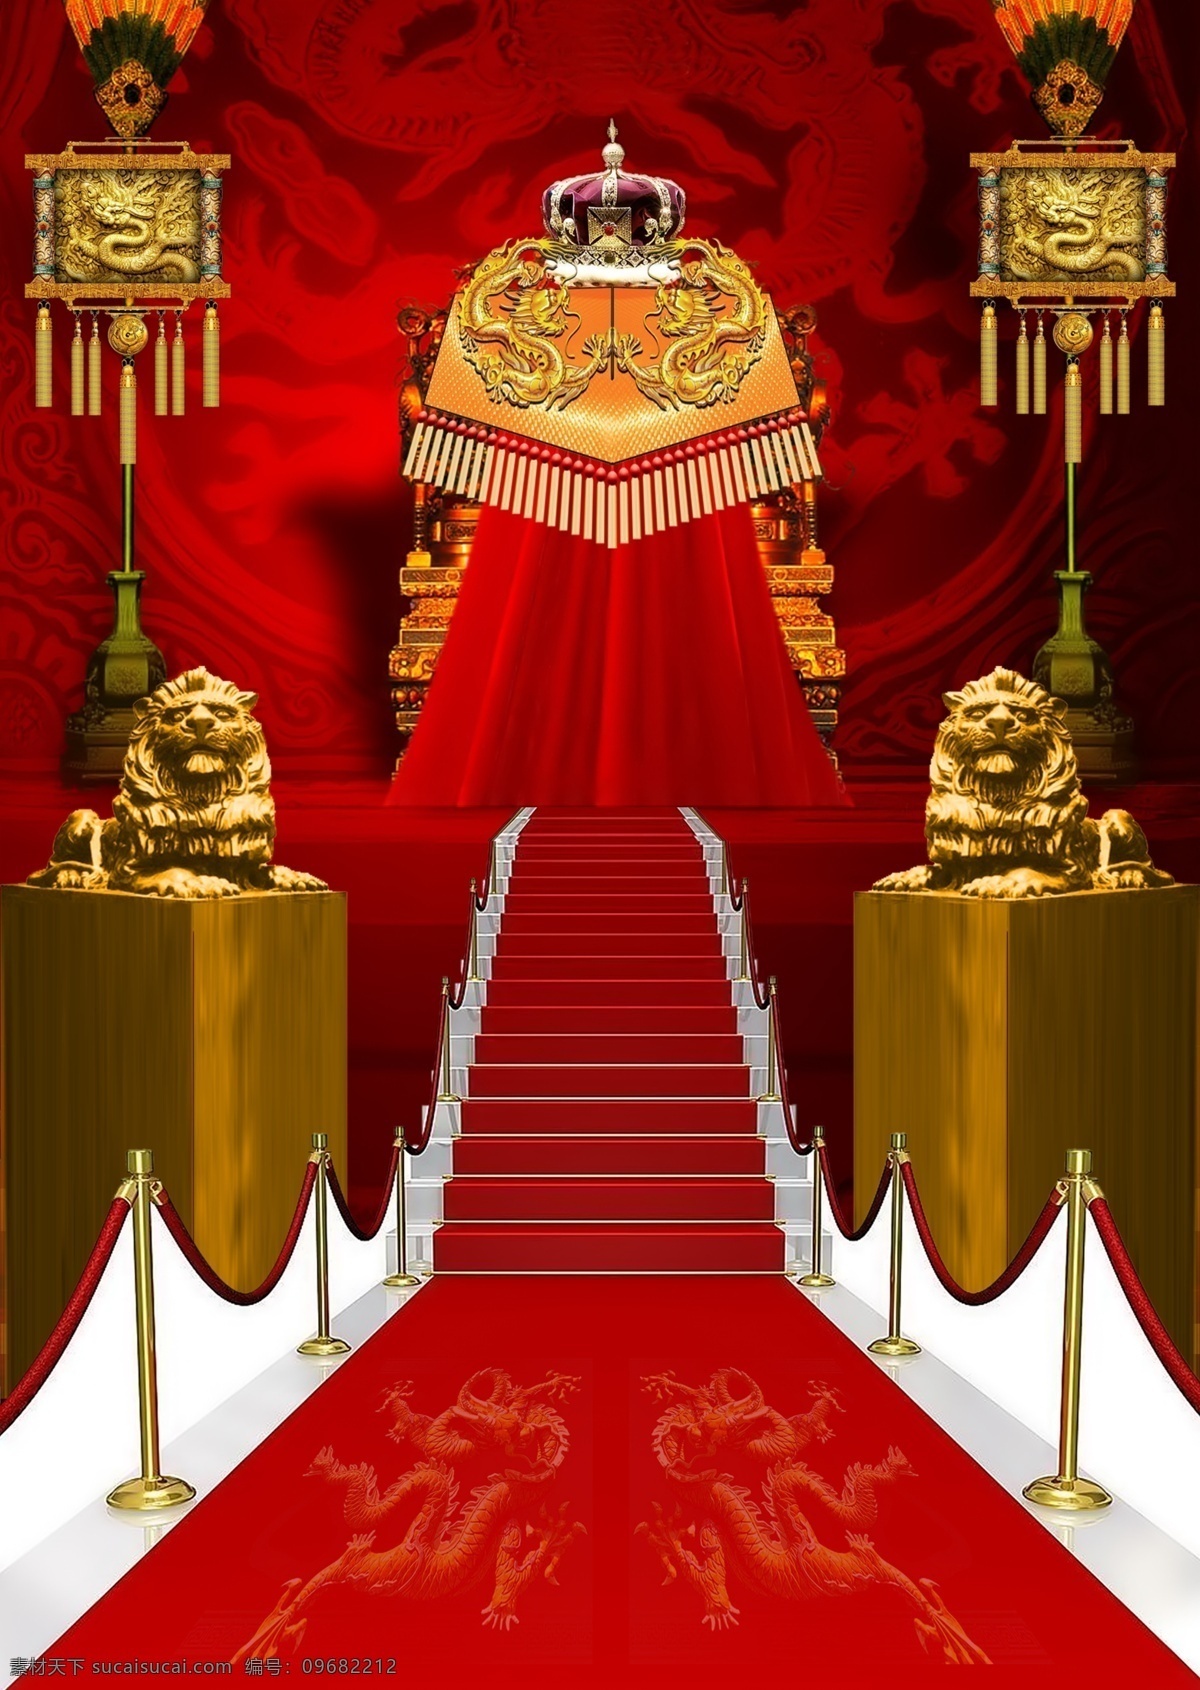 地产 广告 红色 系列 地产设计 高端大气 红色系列 皇冠 龙 龙椅 荣耀 狮子 尊贵 psd源文件